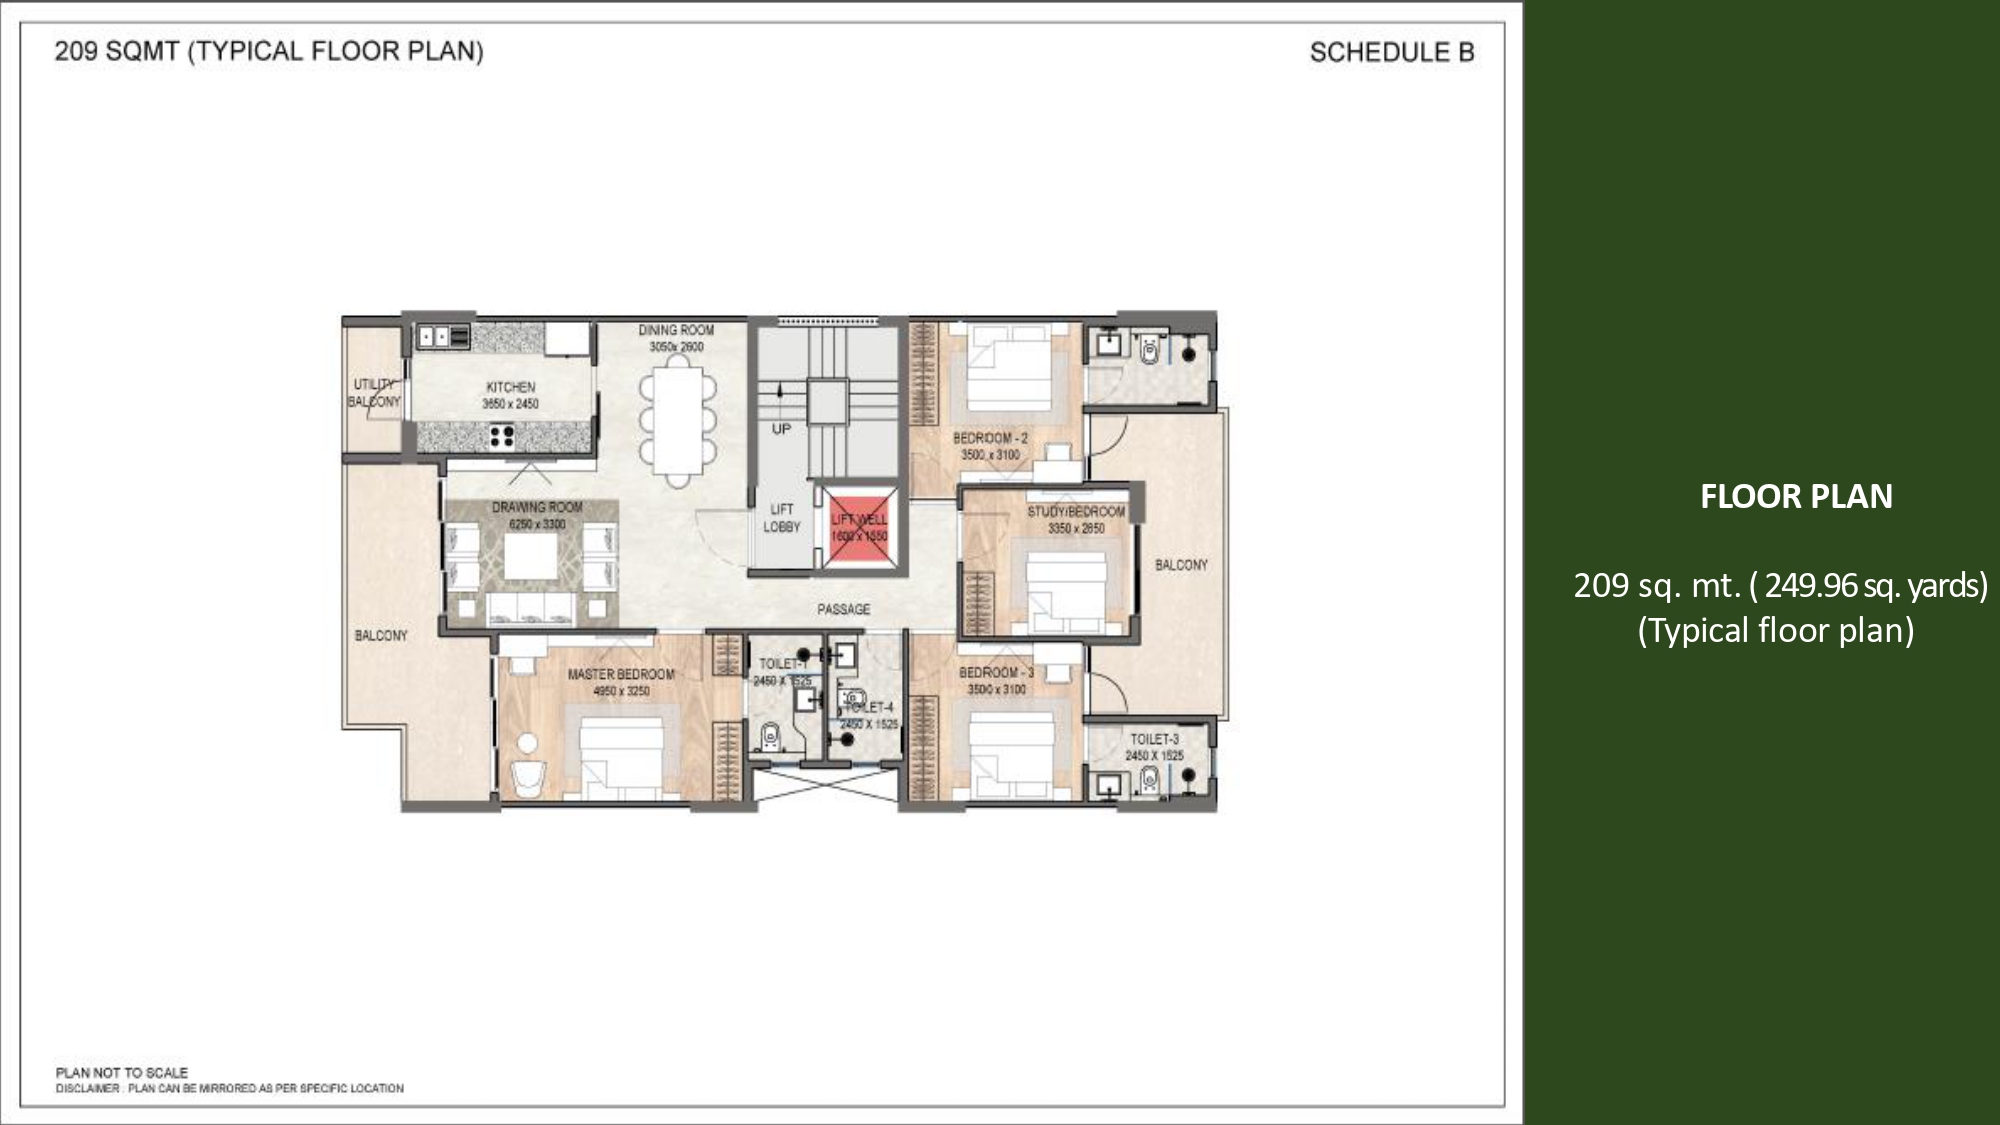 250.67 sqyards Typical Floor Plan